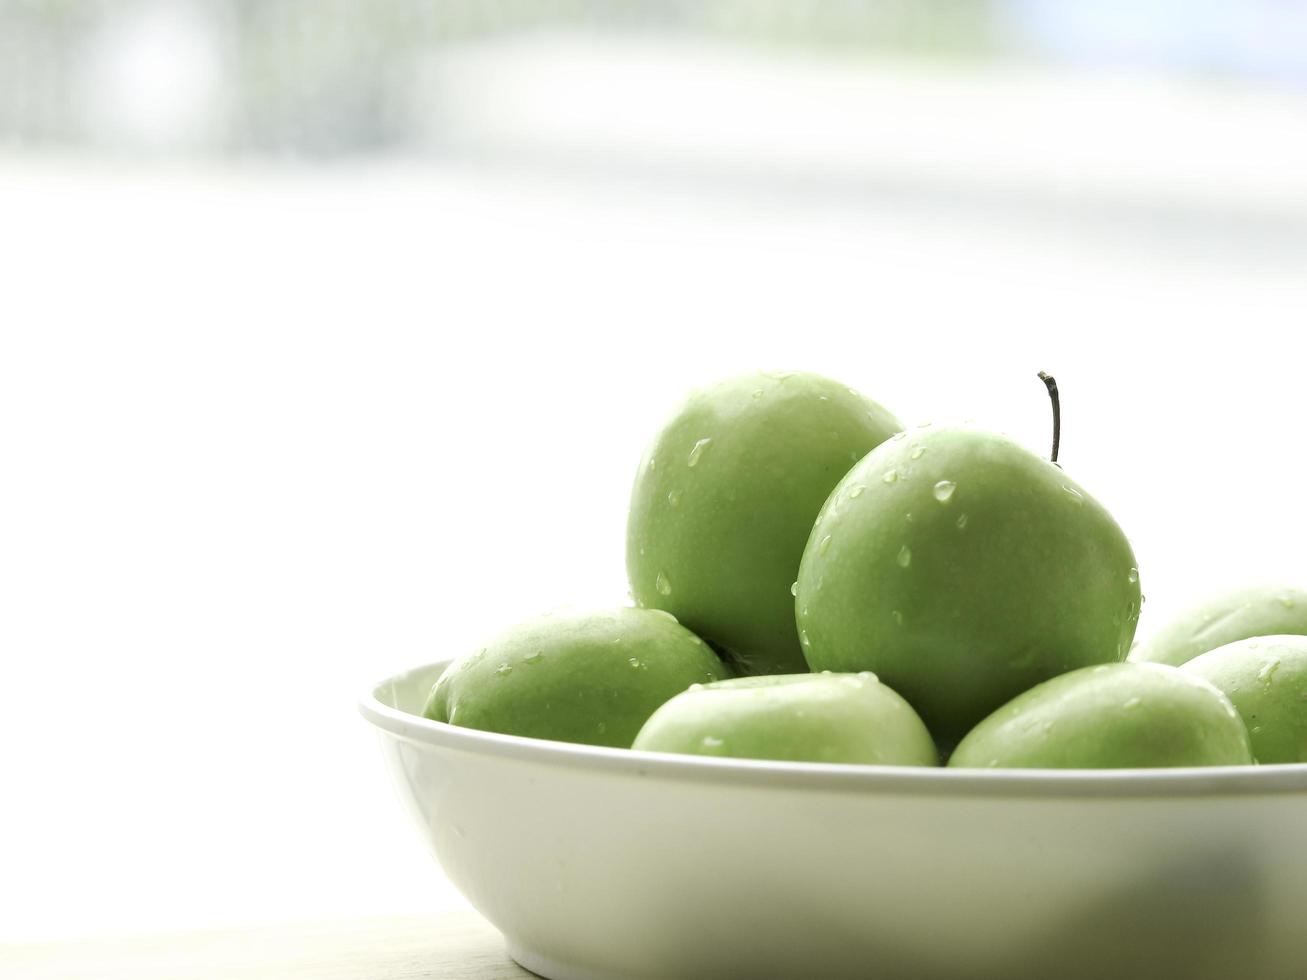 fruta cruda de manzana verde madura en un tazón blanco sobre una mesa de madera, productos frescos orgánicos saludables foto